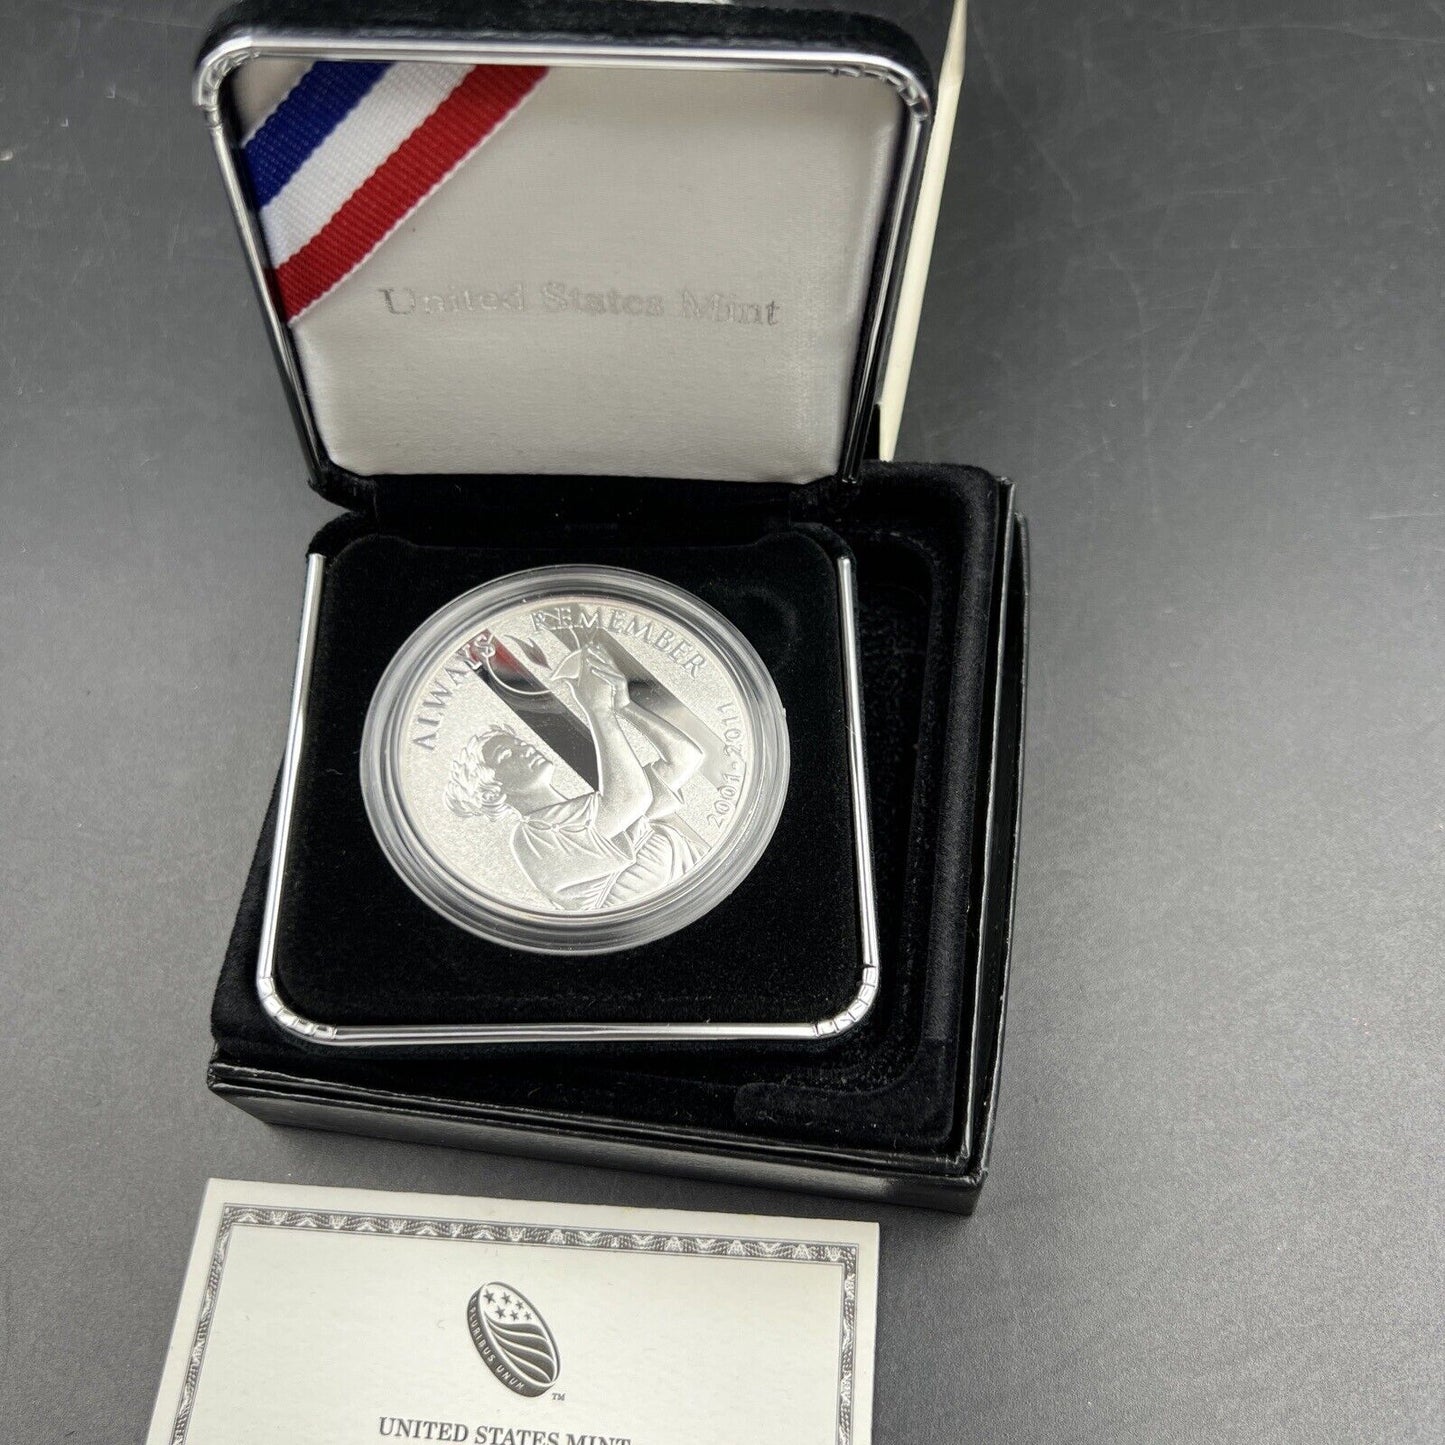 2011 US Mint September 11 National Medal Silver Proof OGP 1 Oz